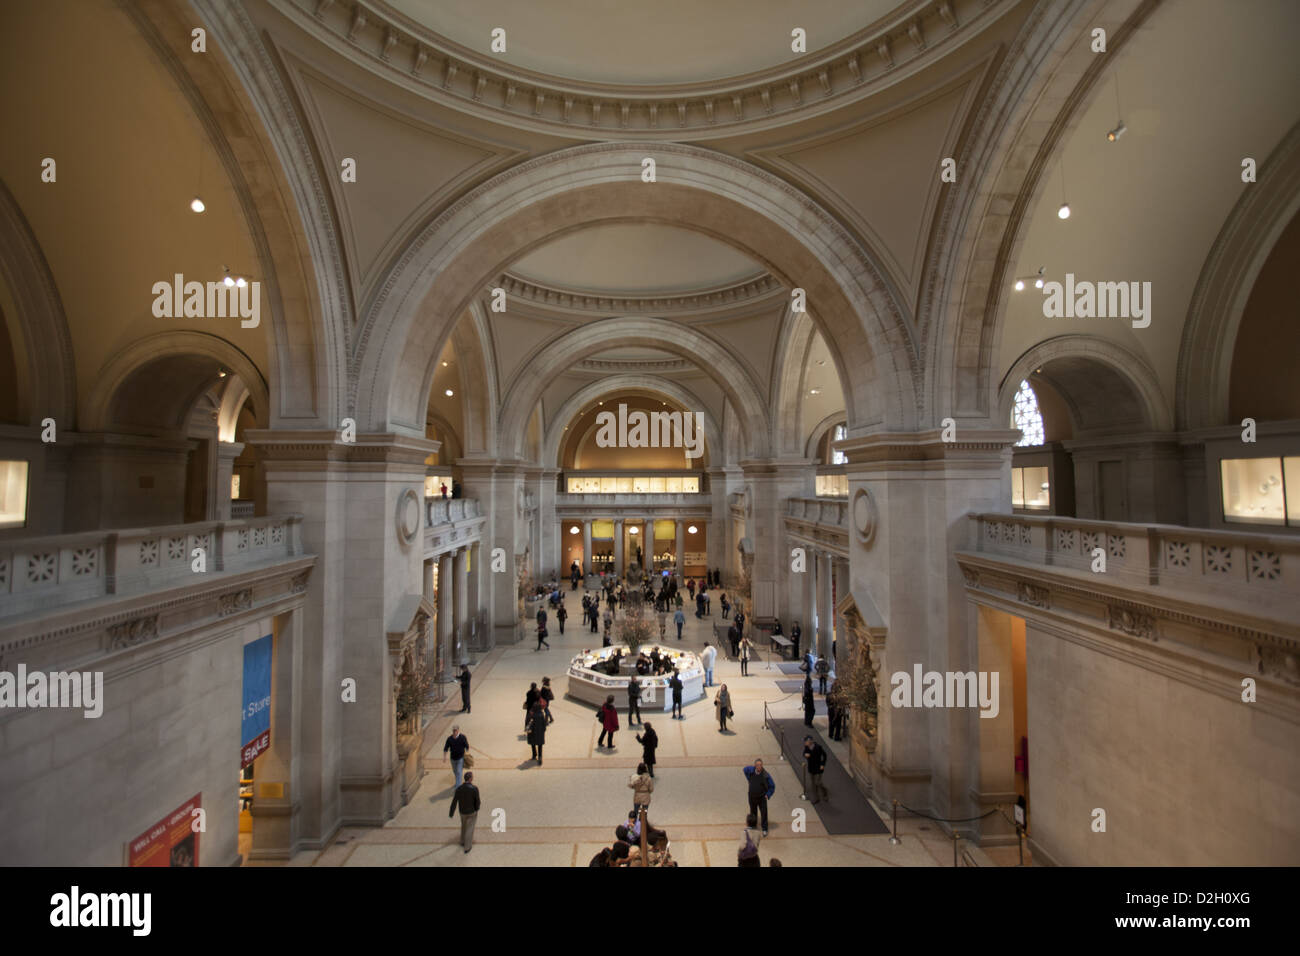 Les belles voûtes dans le hall d'entrée principale au Metropolitan Museum of Art de New York. Banque D'Images